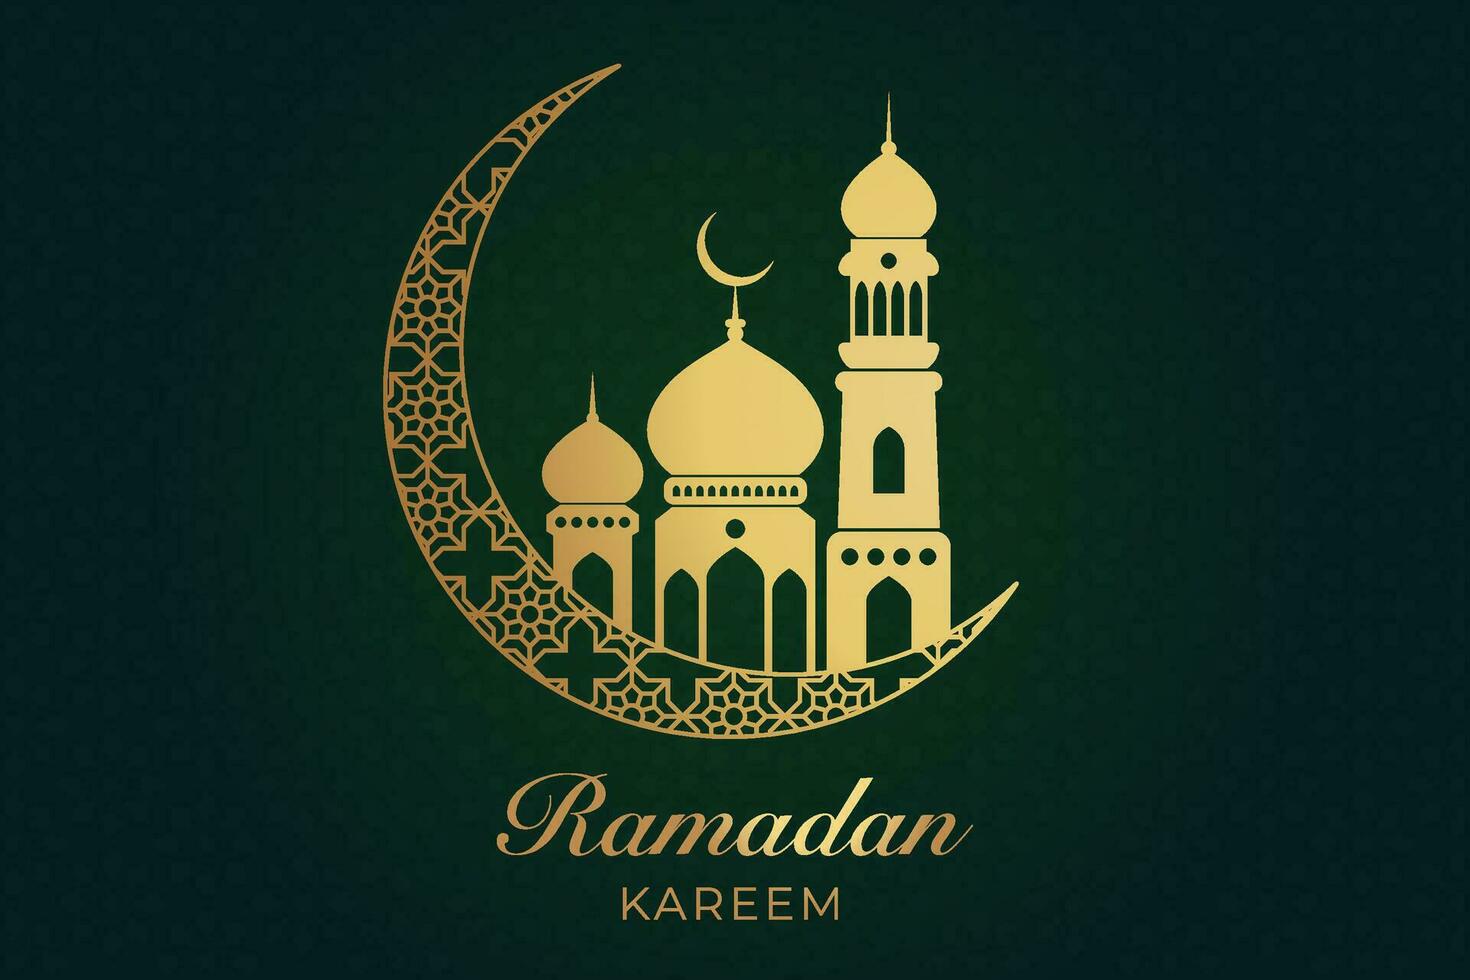 Ramadan kareem groet kaart met moskee en halve maan vector